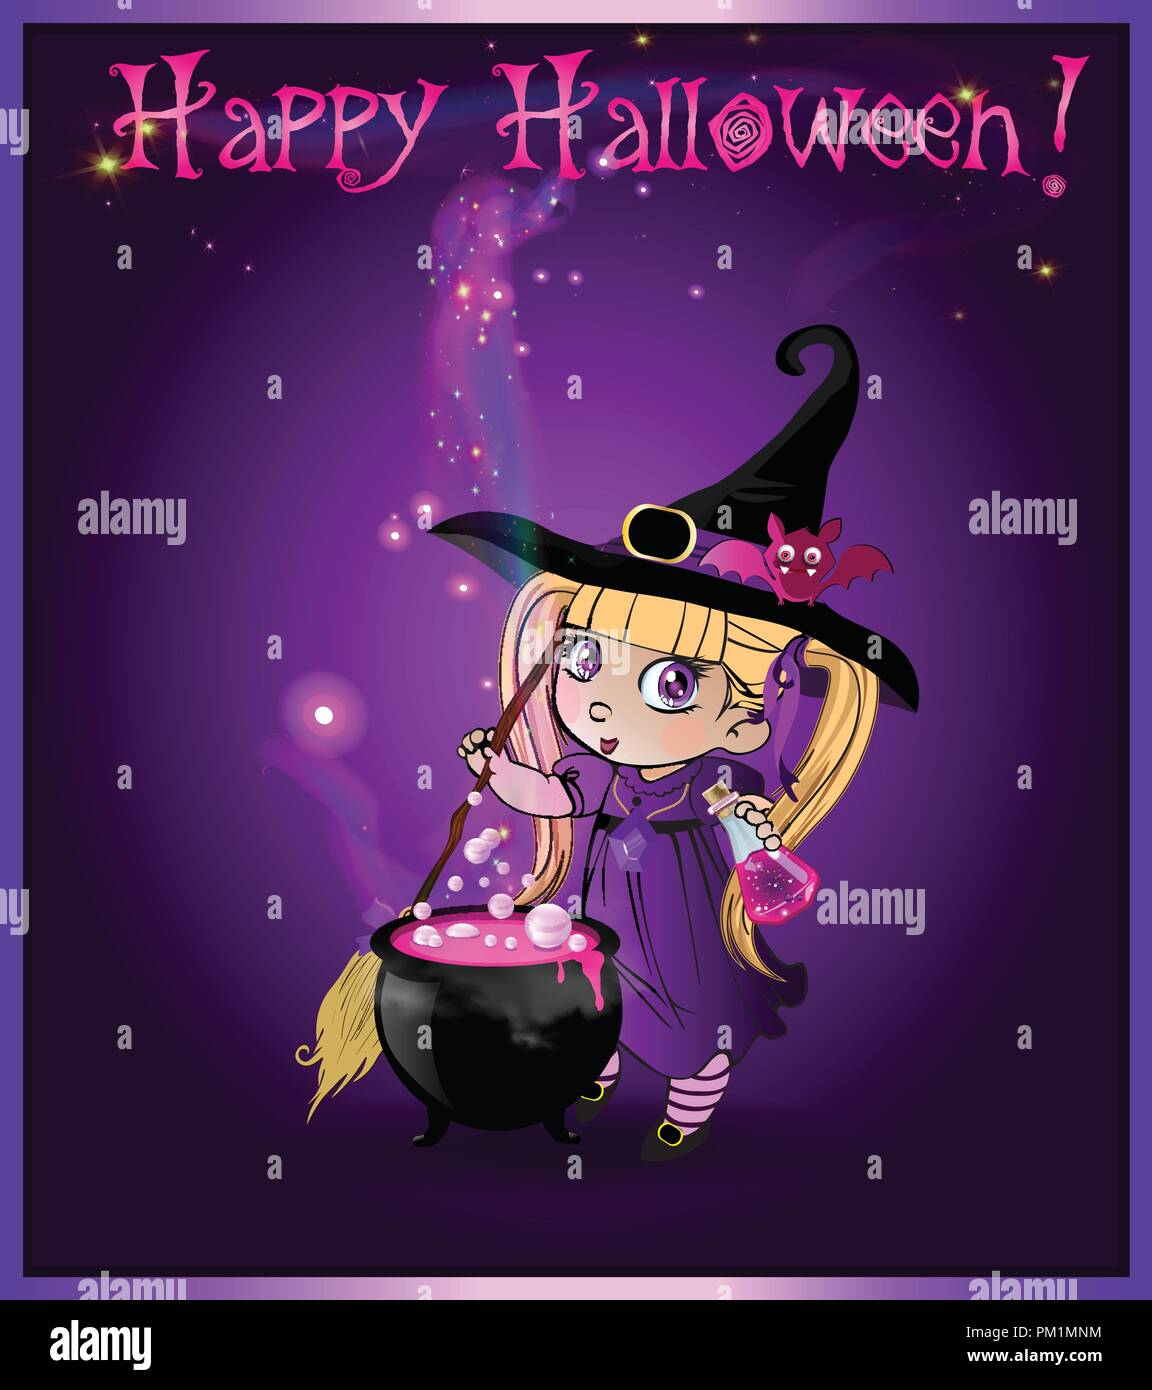 Switch I Witch You A Happy Halloween  AnimePlanet